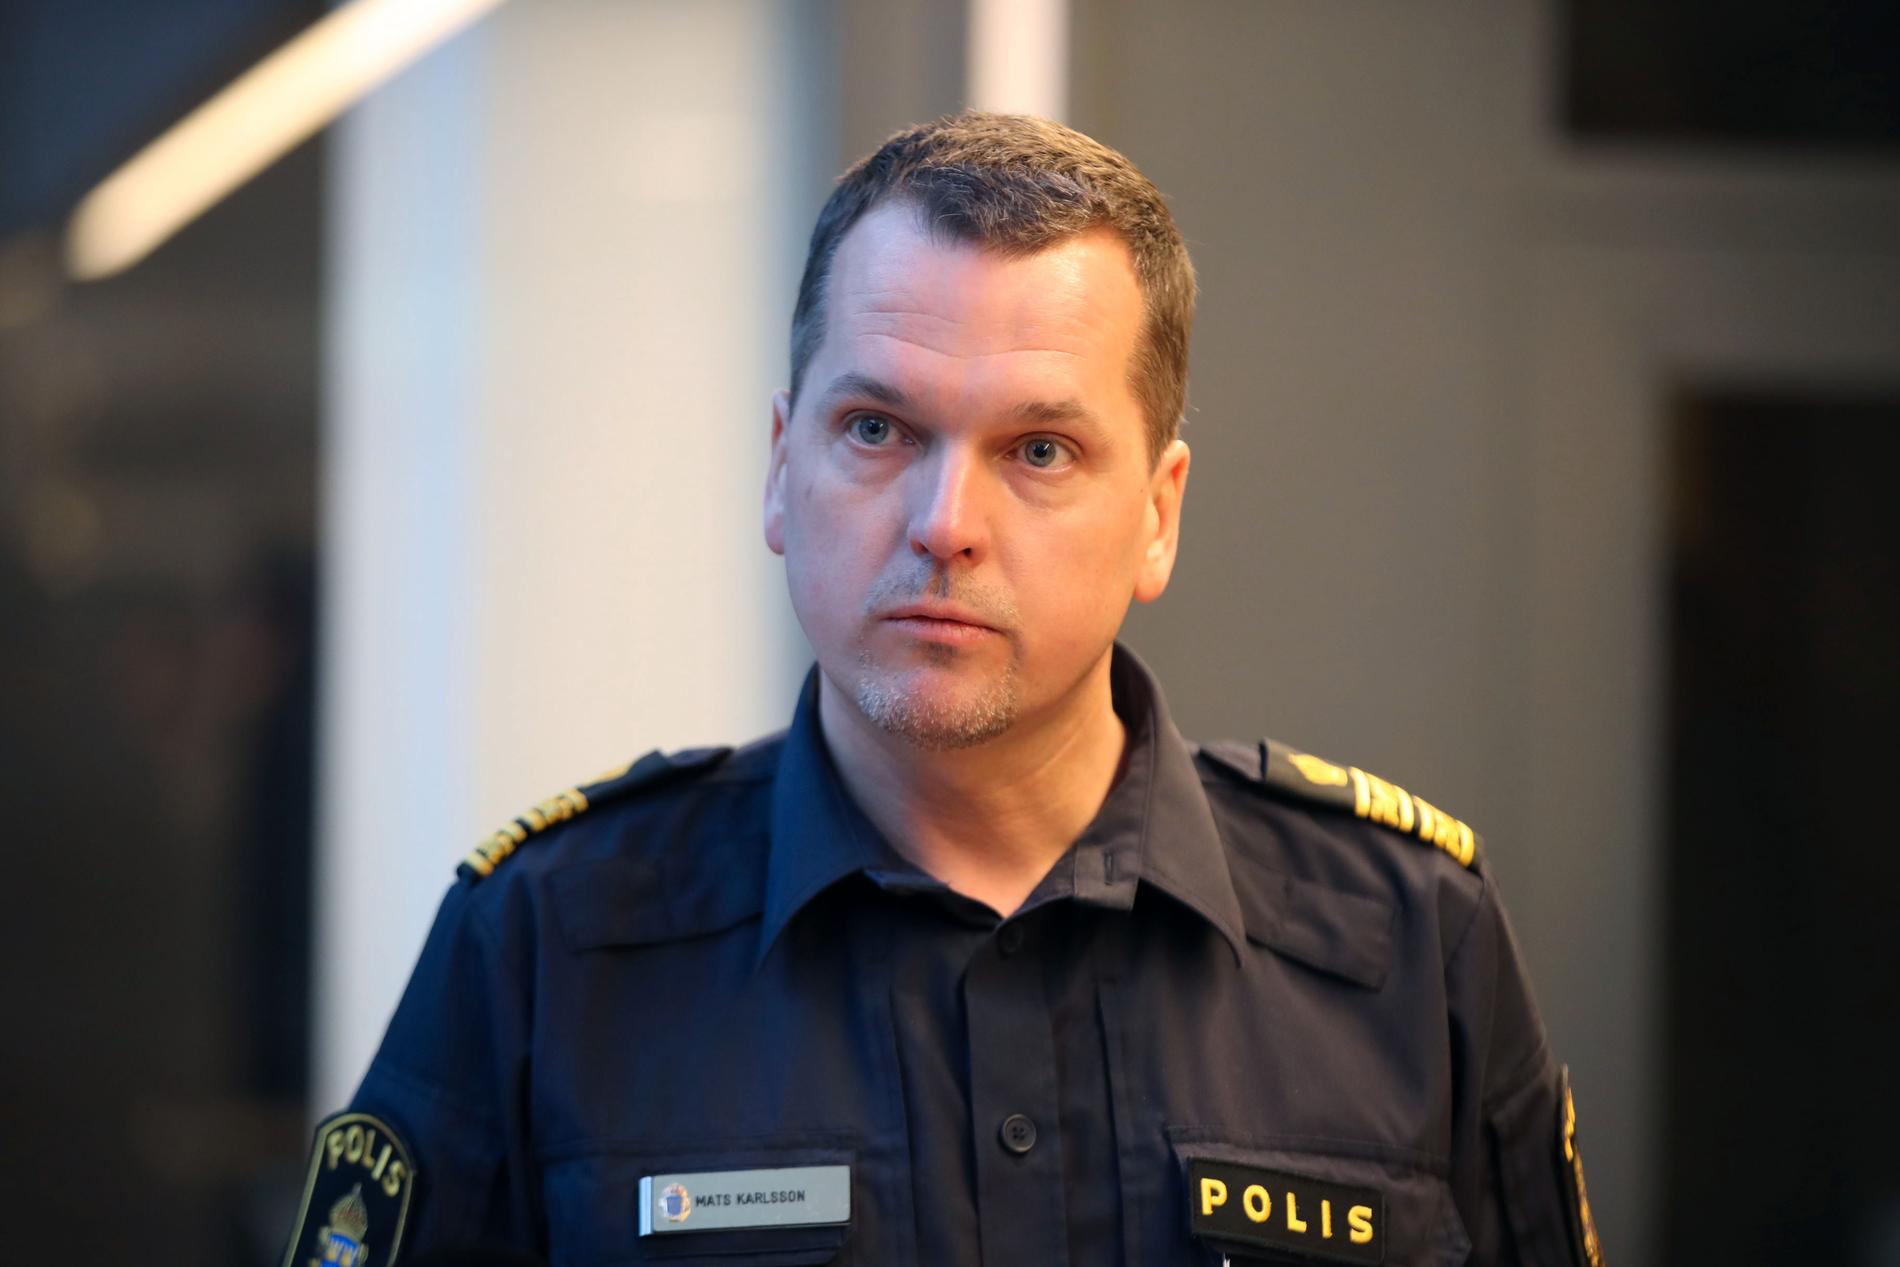 Malmöpolisens Mars Karlsson vid presskonferensen på fredagsförmiddagen.